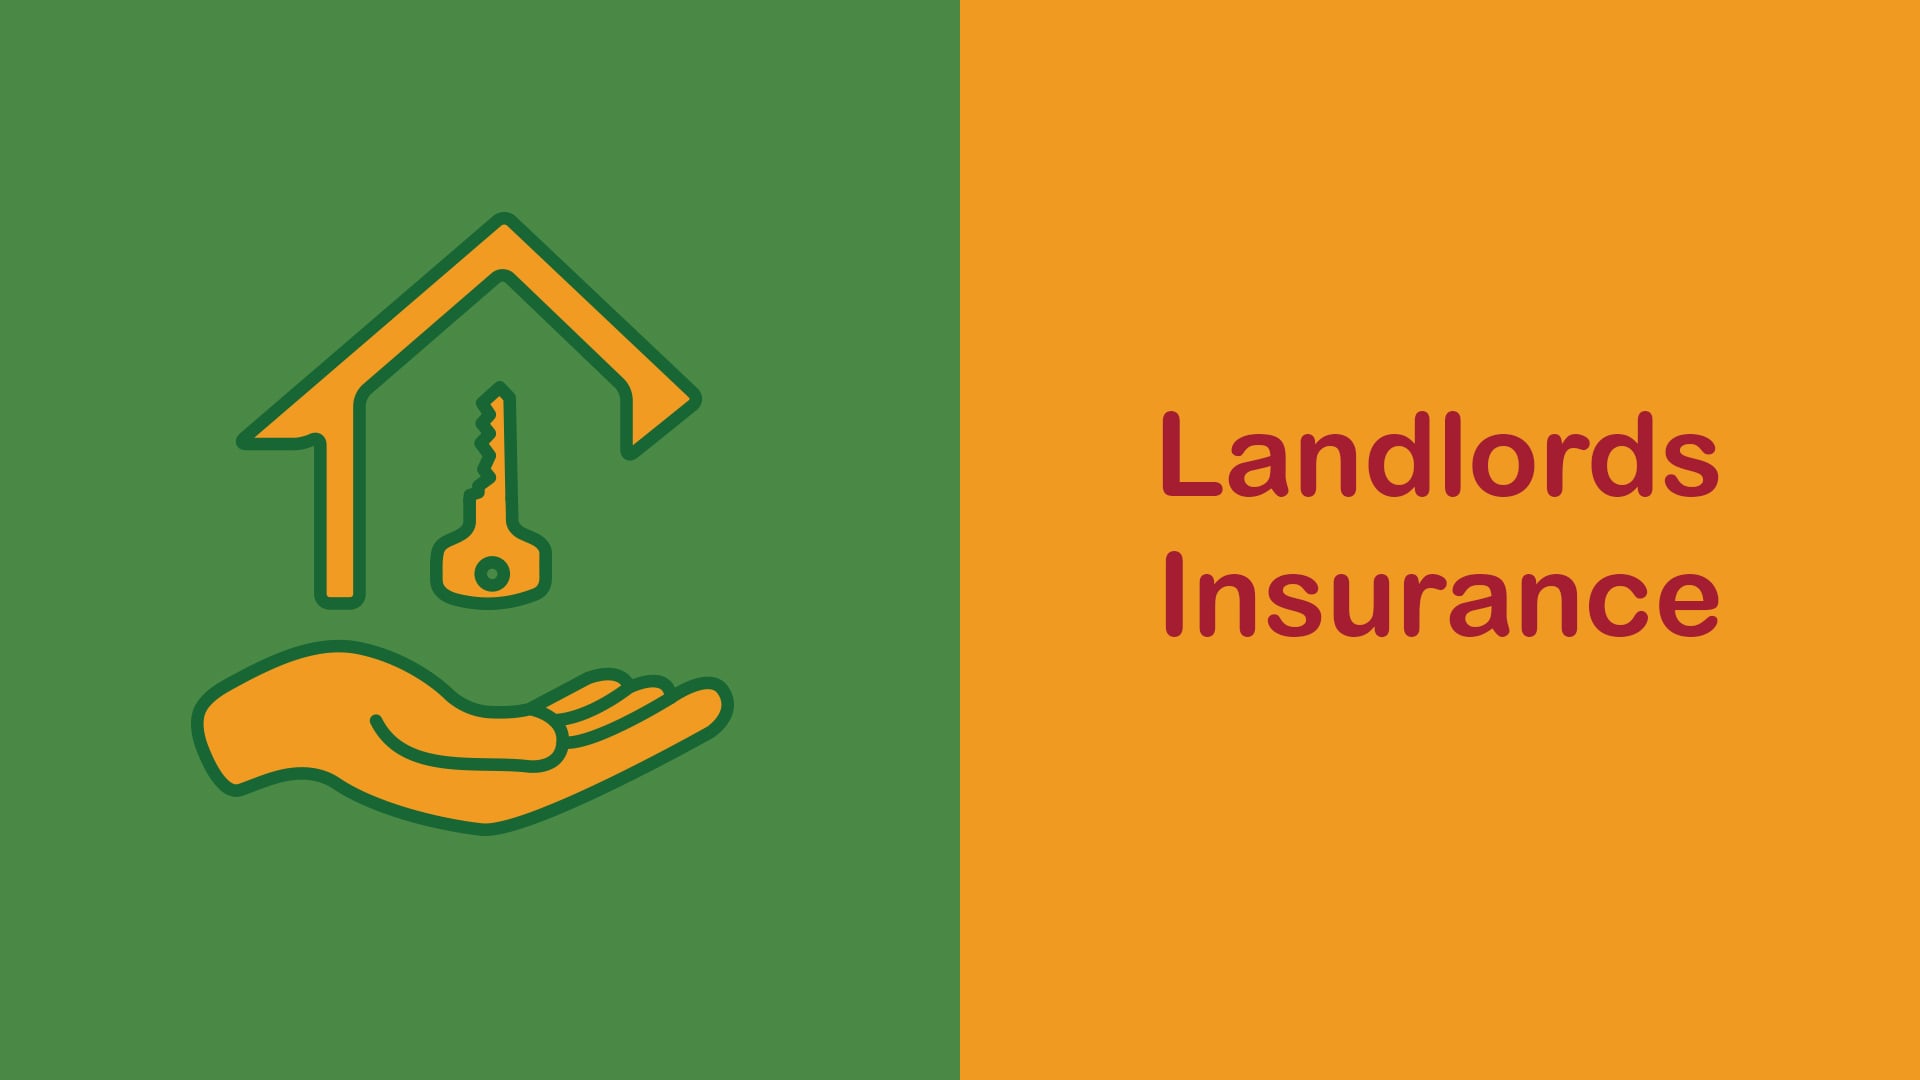 Landlords Insurance Explained